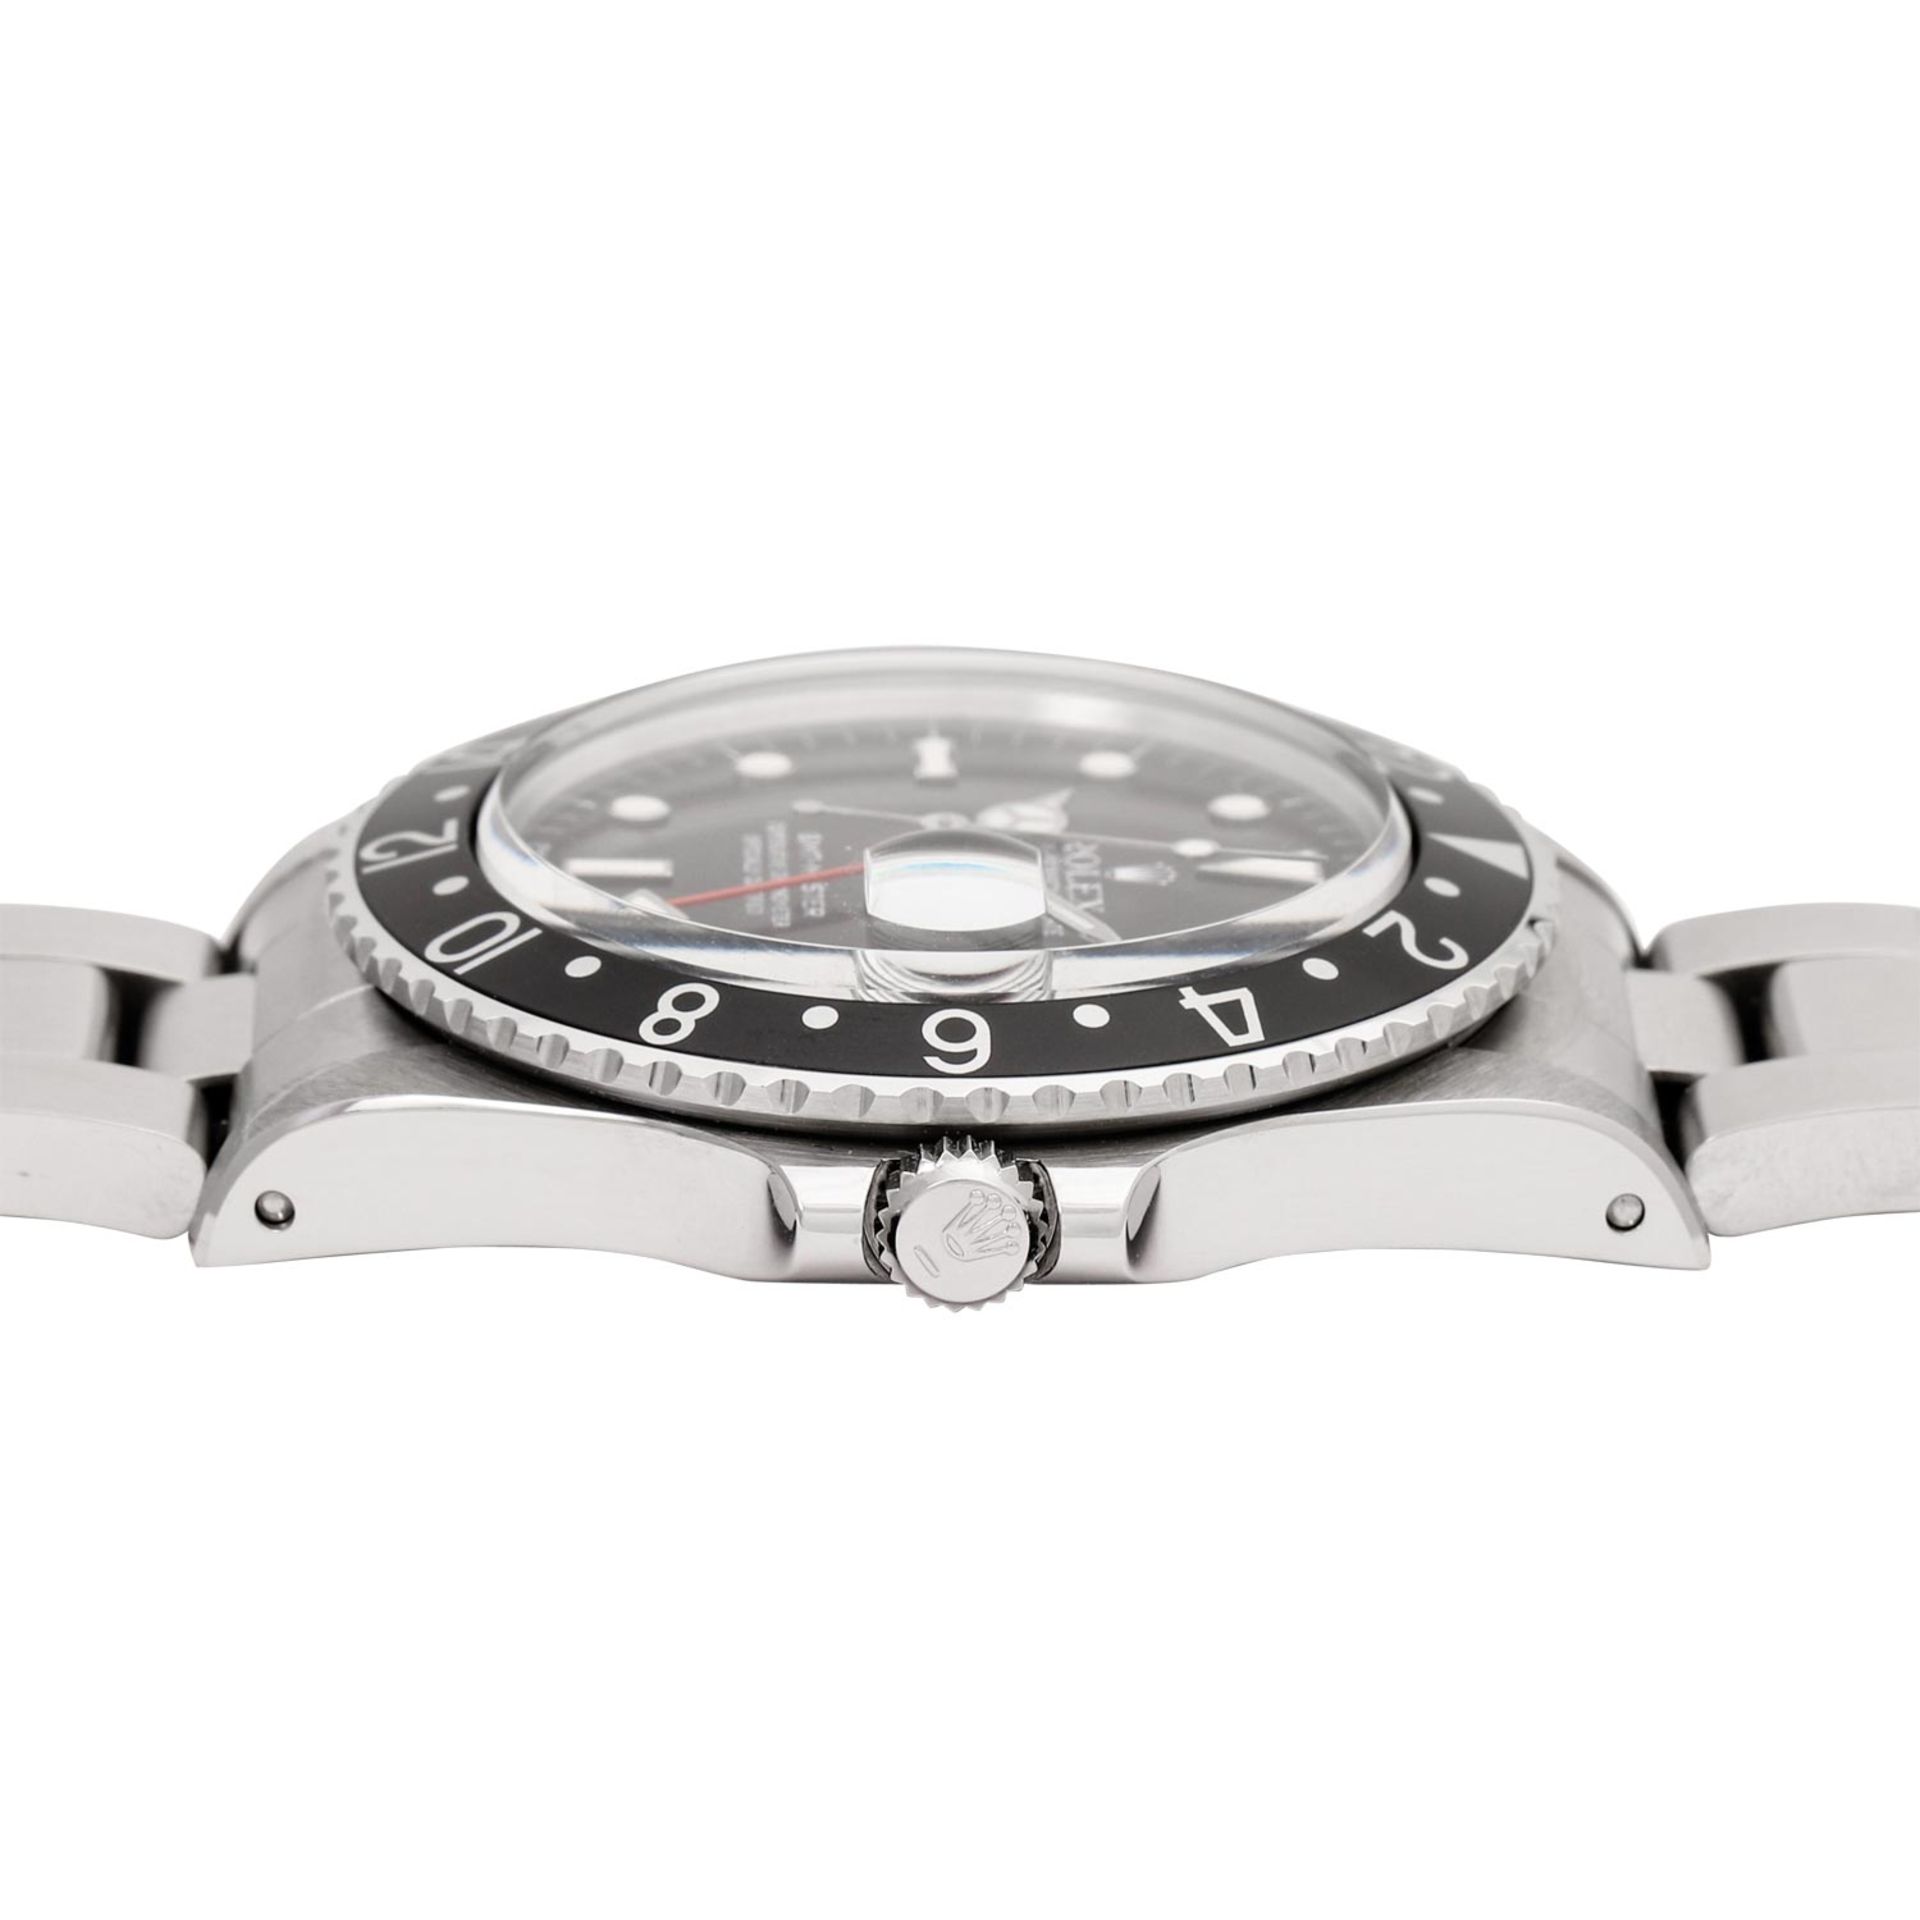 ROLEX Vintage GMT-MASTER "Stardust", Ref. 16750. Armbanduhr aus 1988. - Bild 3 aus 8